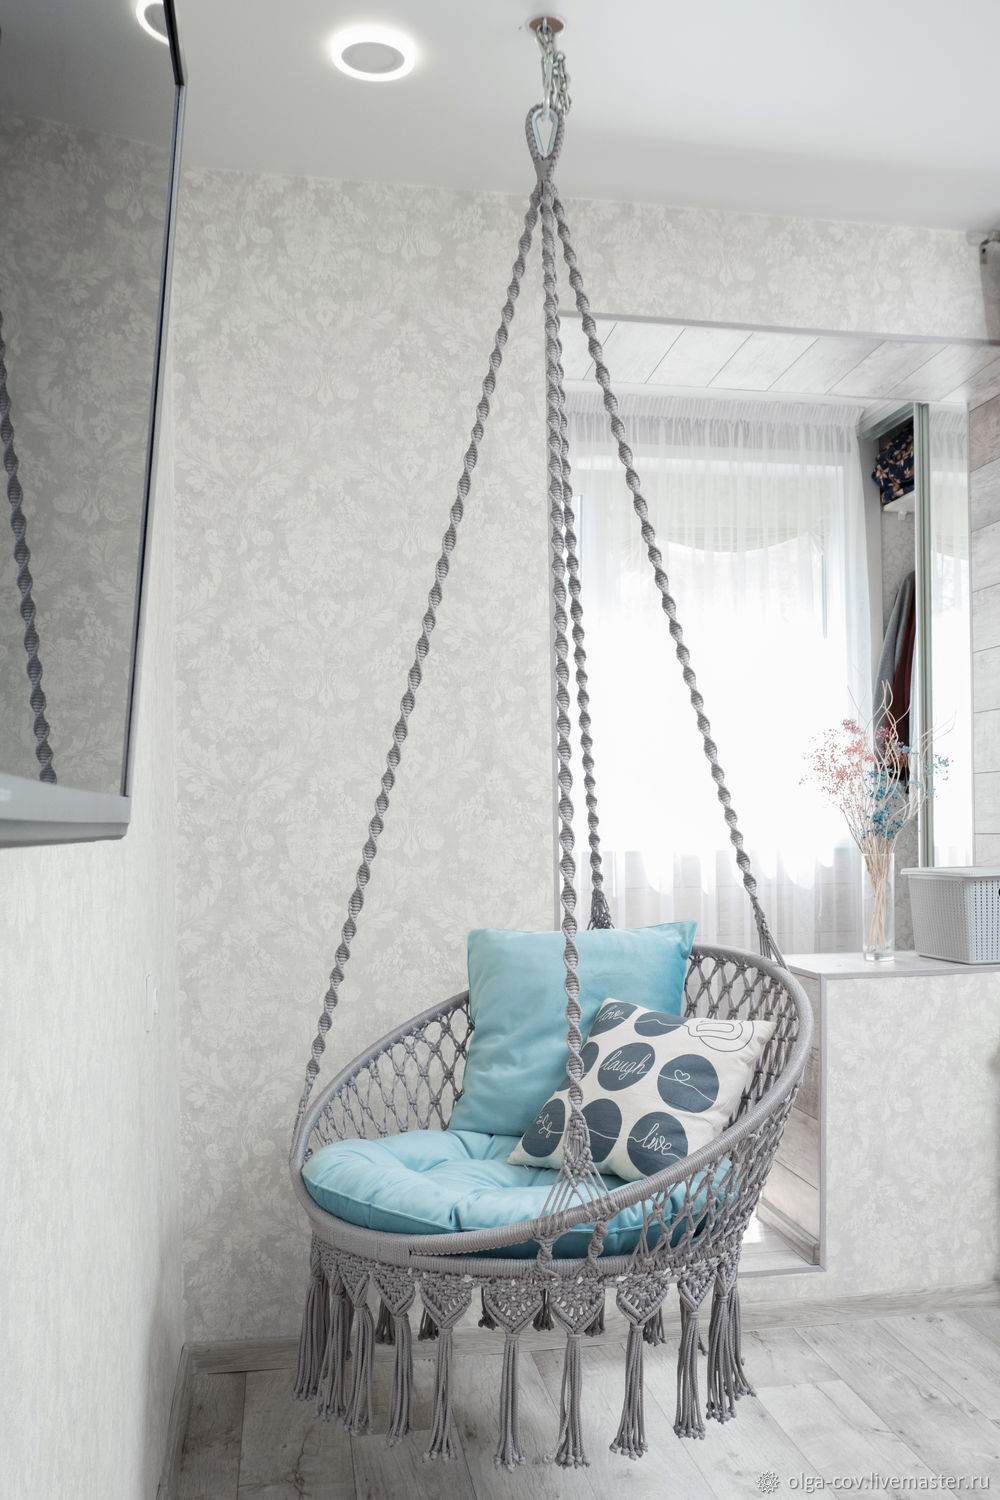 Подвесное кресло в интерьере: уютный и стильный элемент мебели